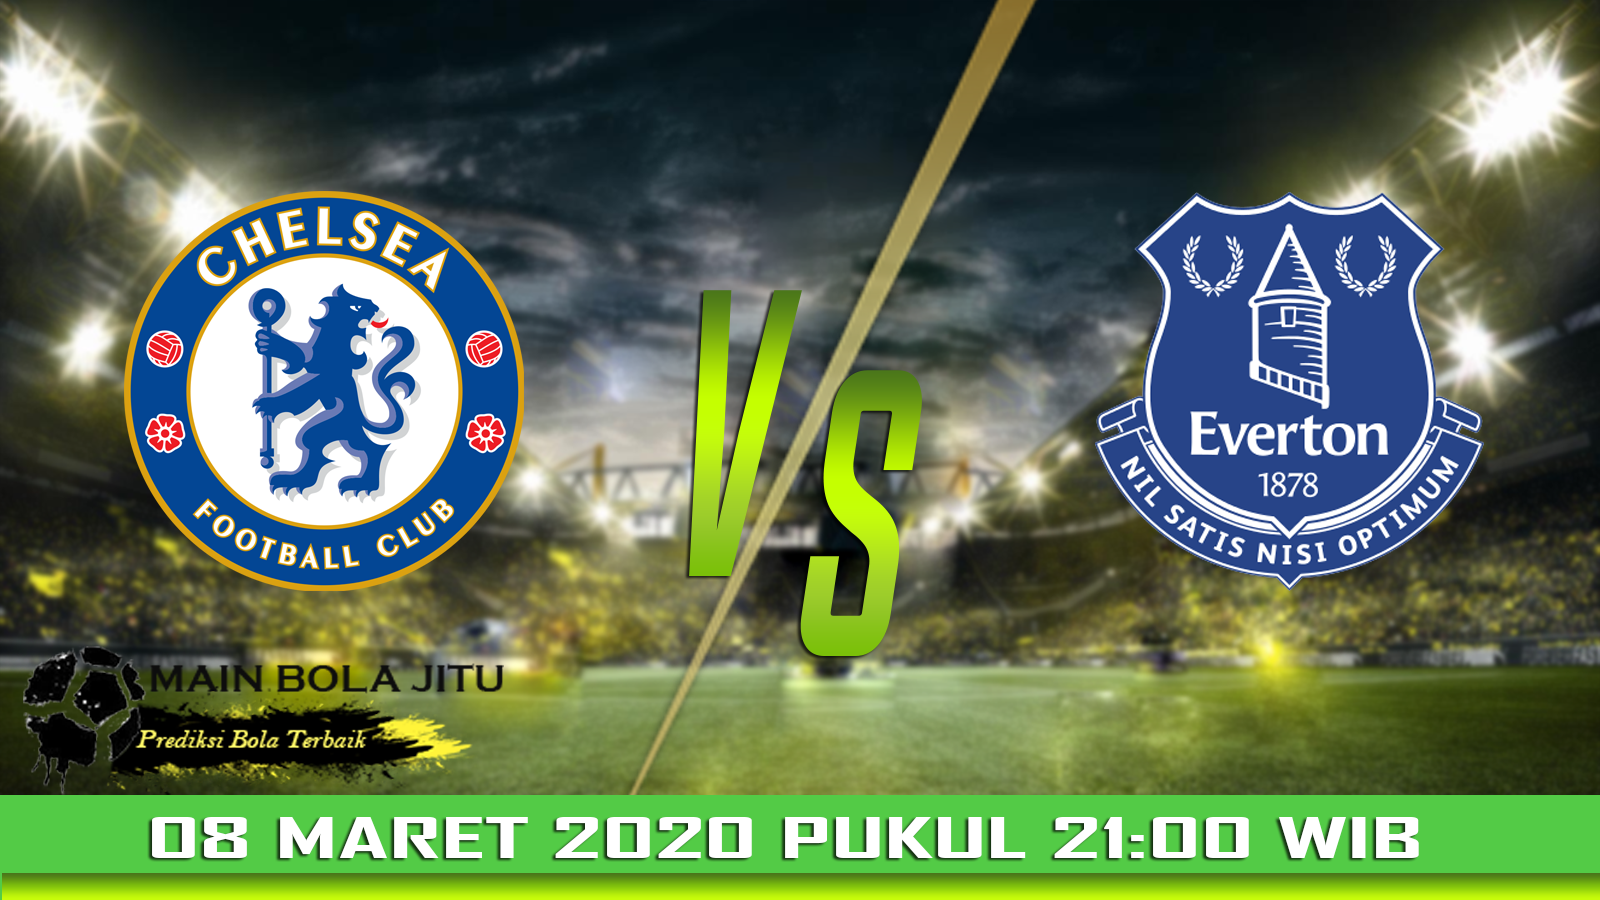 Prediksi Bola Chelsea vs Everton tanggal 08-03-2020